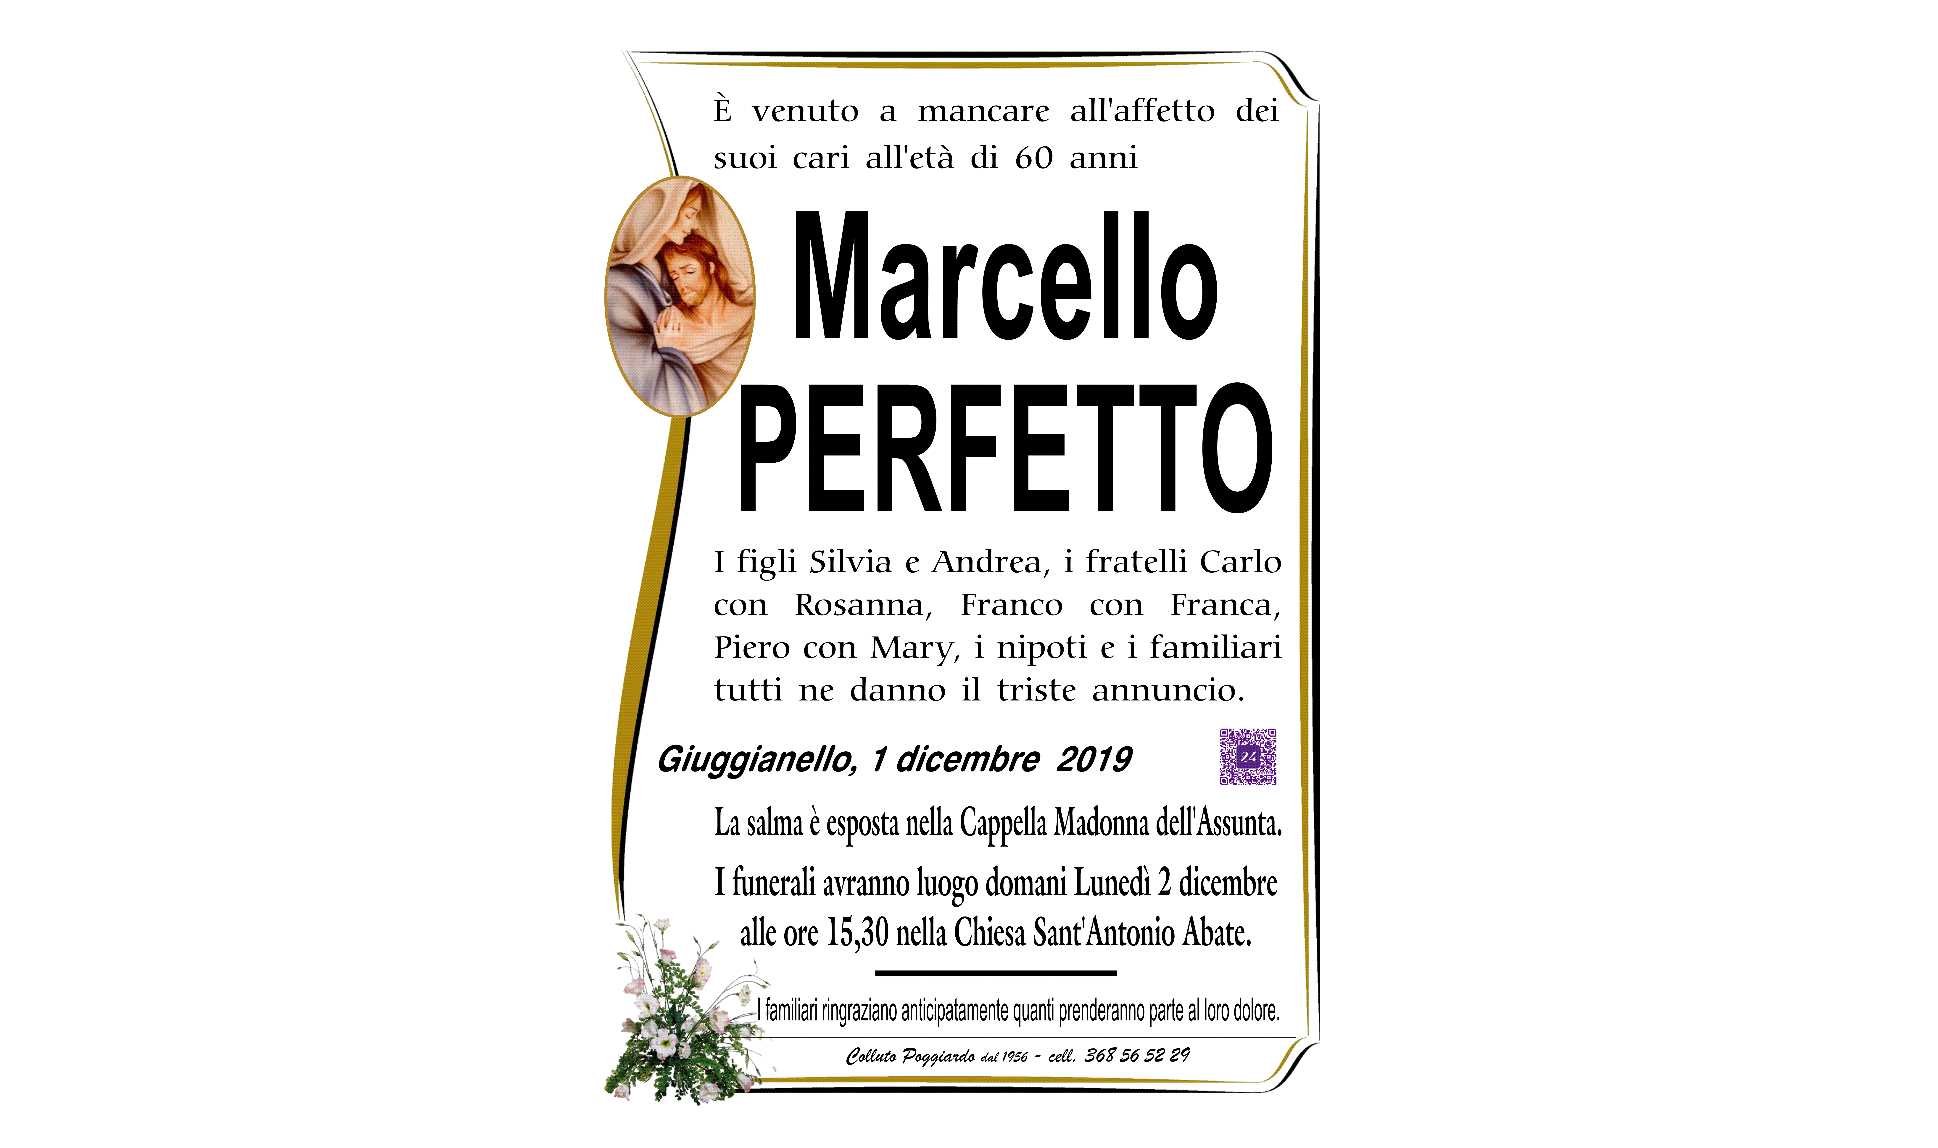 Marcello Perfetto